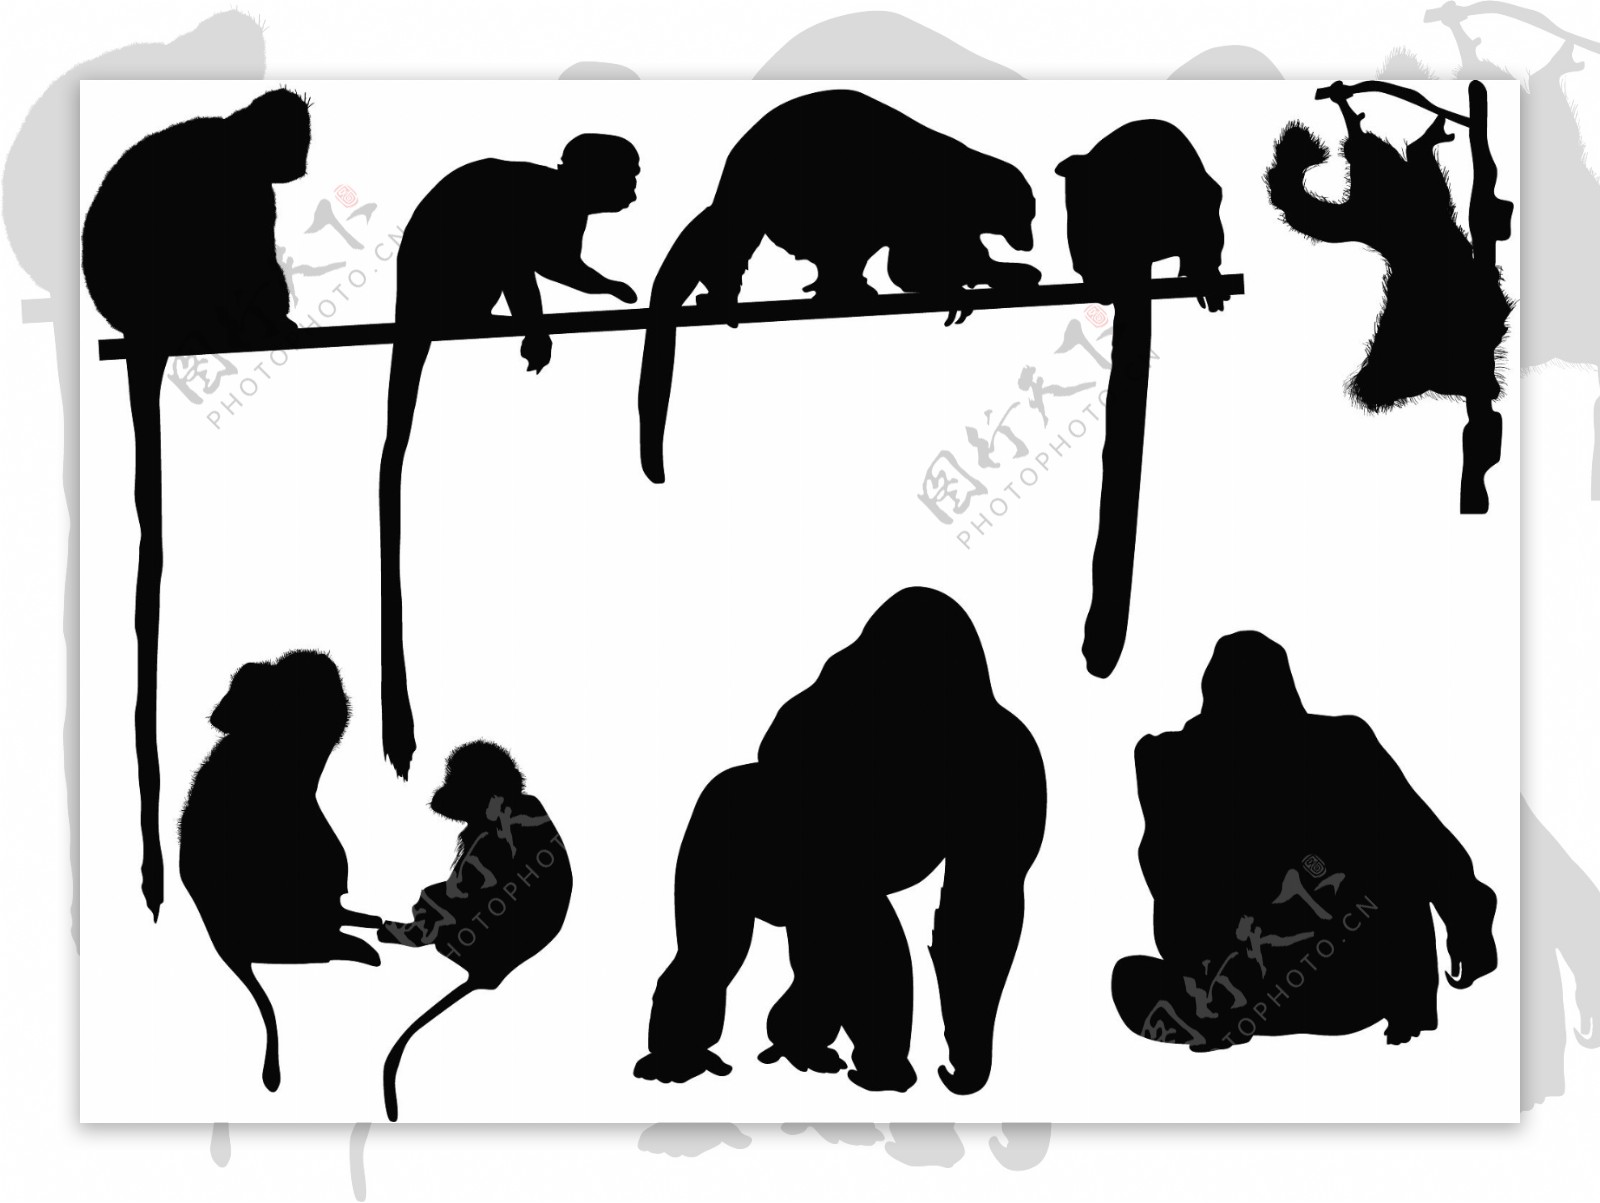 黑色疯狂猴子 向量例证. 插画 包括有 耳朵, 逗人喜爱, 线路, 肢体, 结构树, 说明, 夹子, 叶子 - 3442748